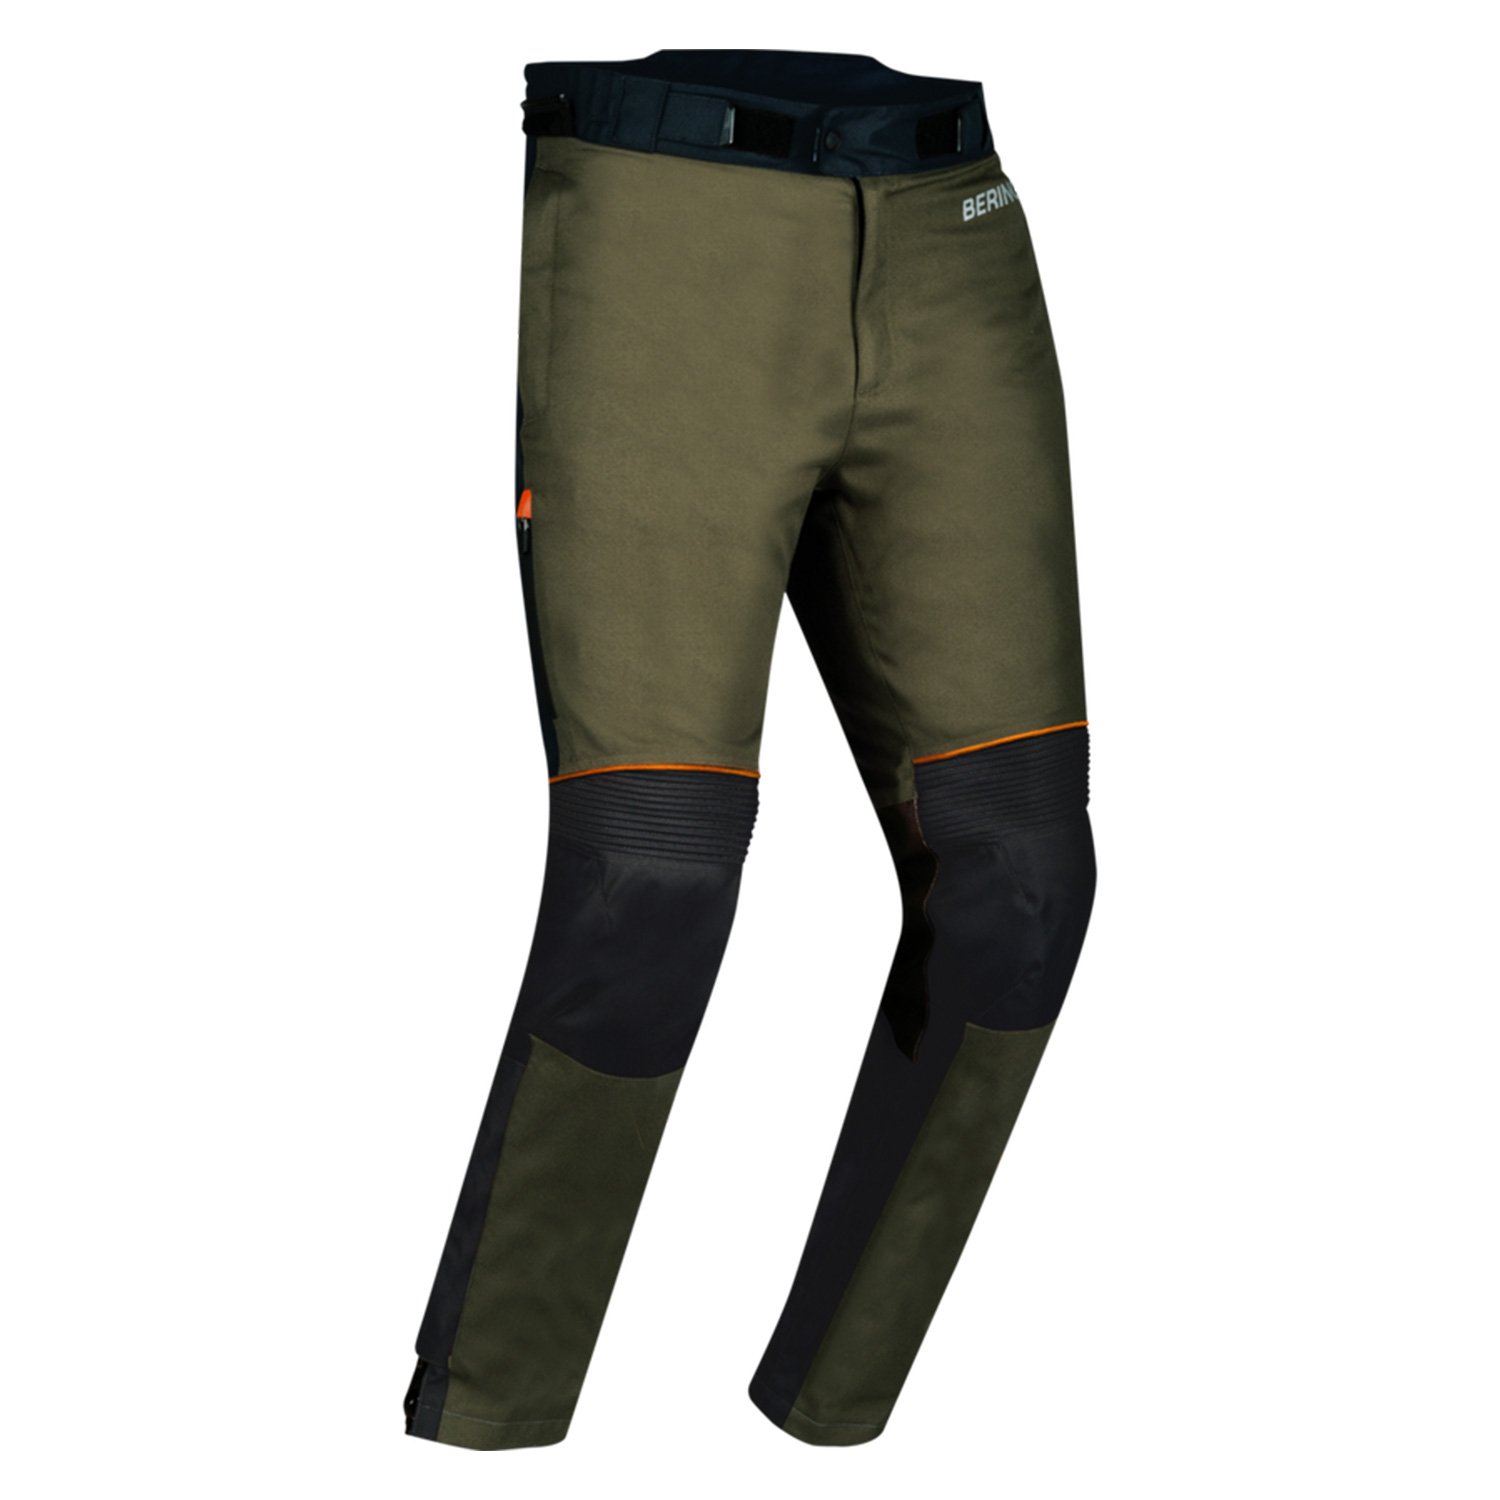 Image of Bering Zephyr Trousers Black Khaki Orange Size 4XL ID 3660815180785